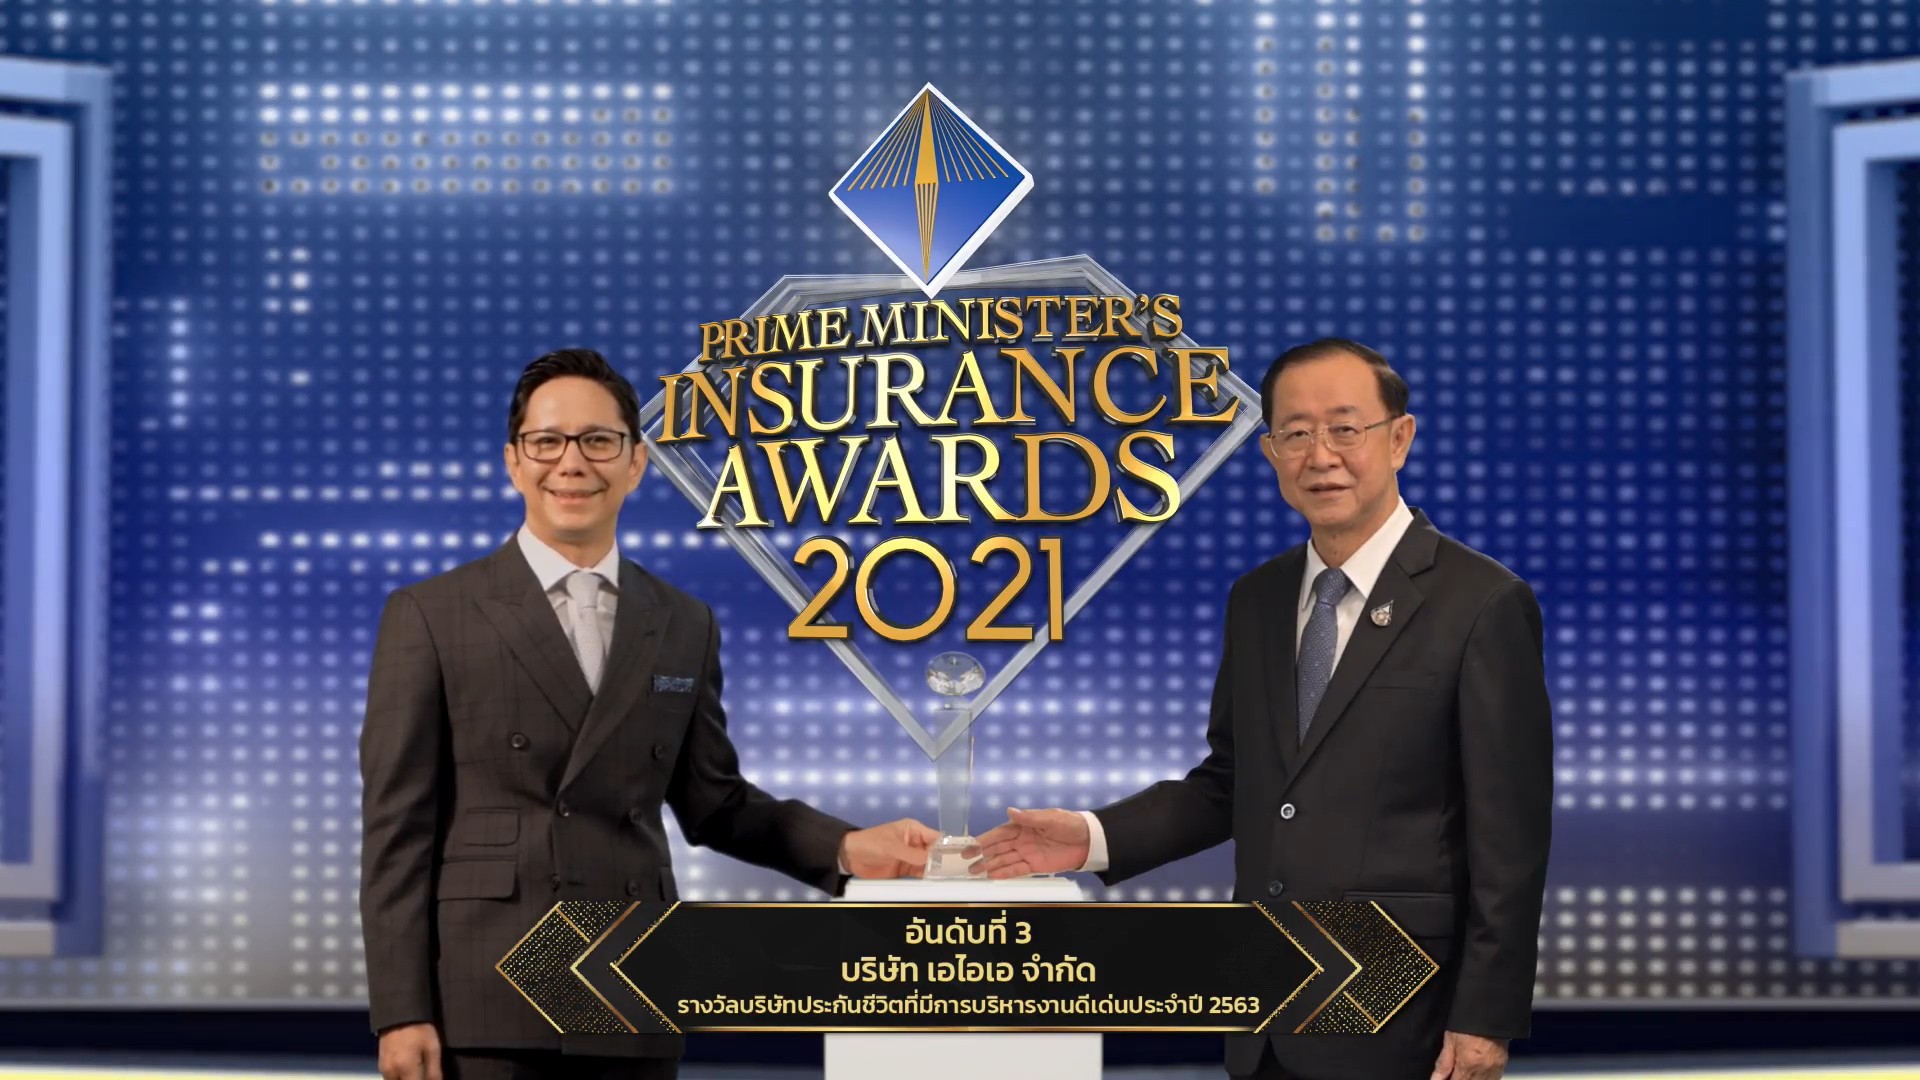 เอไอเอ ประเทศไทย คว้า 2 รางวัลทรงเกียรติ ‘บริษัทประกันชีวิตที่มีการบริหารงานดีเด่น’ อันดับ 3 และ ‘บริษัทประกันภัยที่มีการพัฒนาด้านความยั่งยืน’  จากงาน Prime Minister’s Insurance Awards ปี 2563